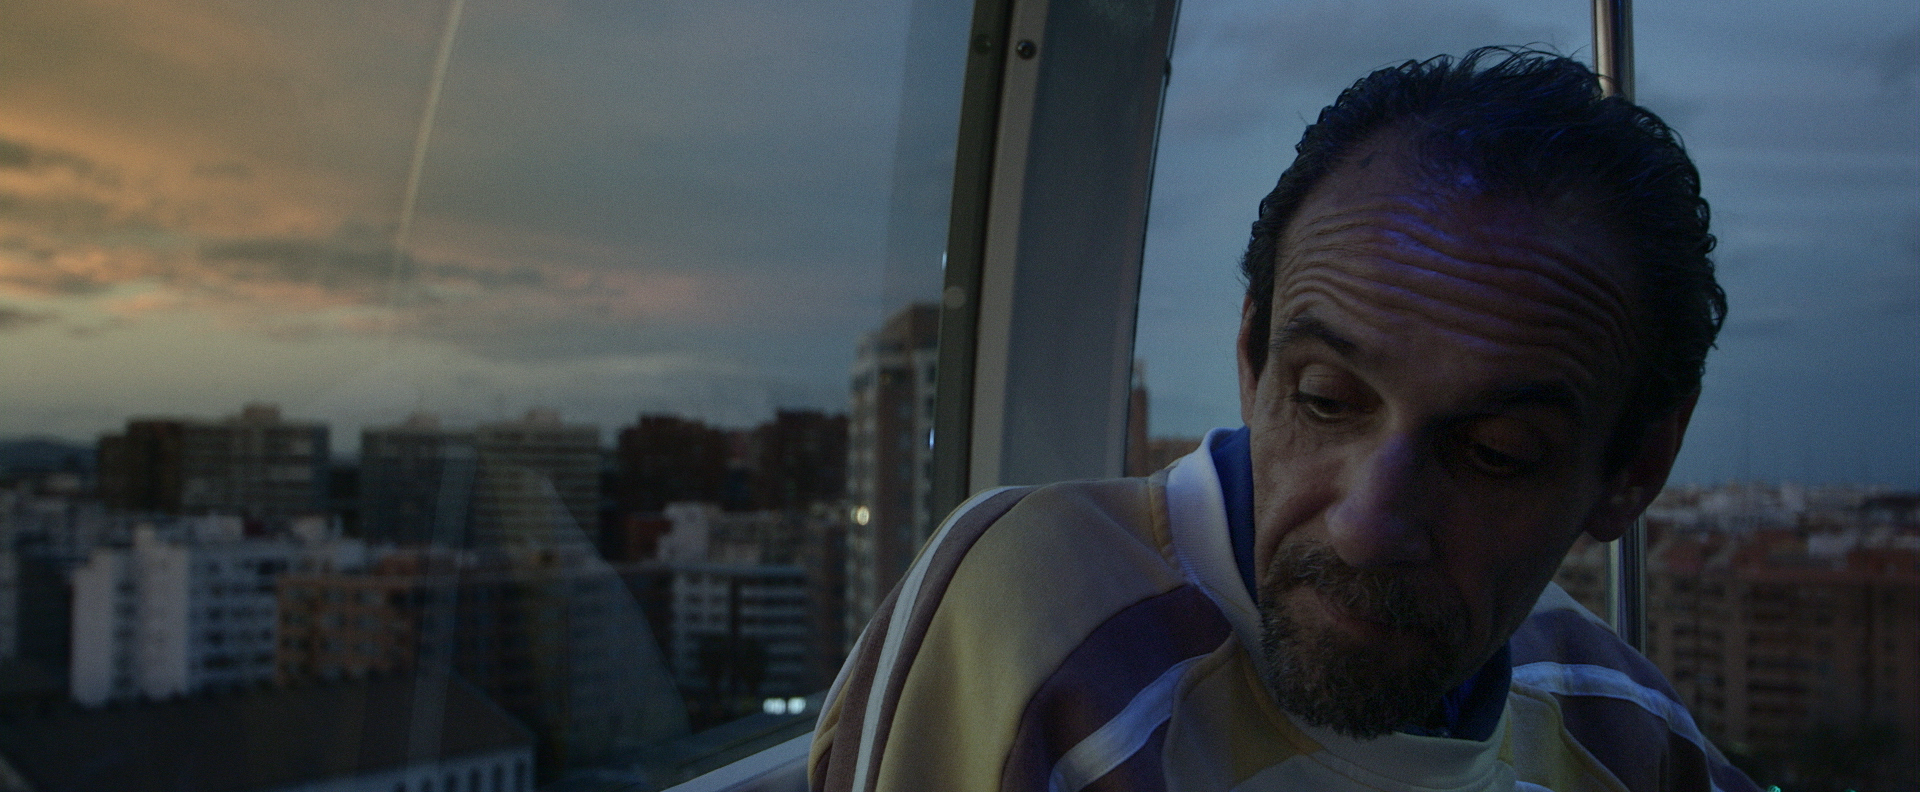 CINEMAGAVIA «Yo tenía una vida», de Octavio Guerra, en cines el próximo 24 de noviembre.